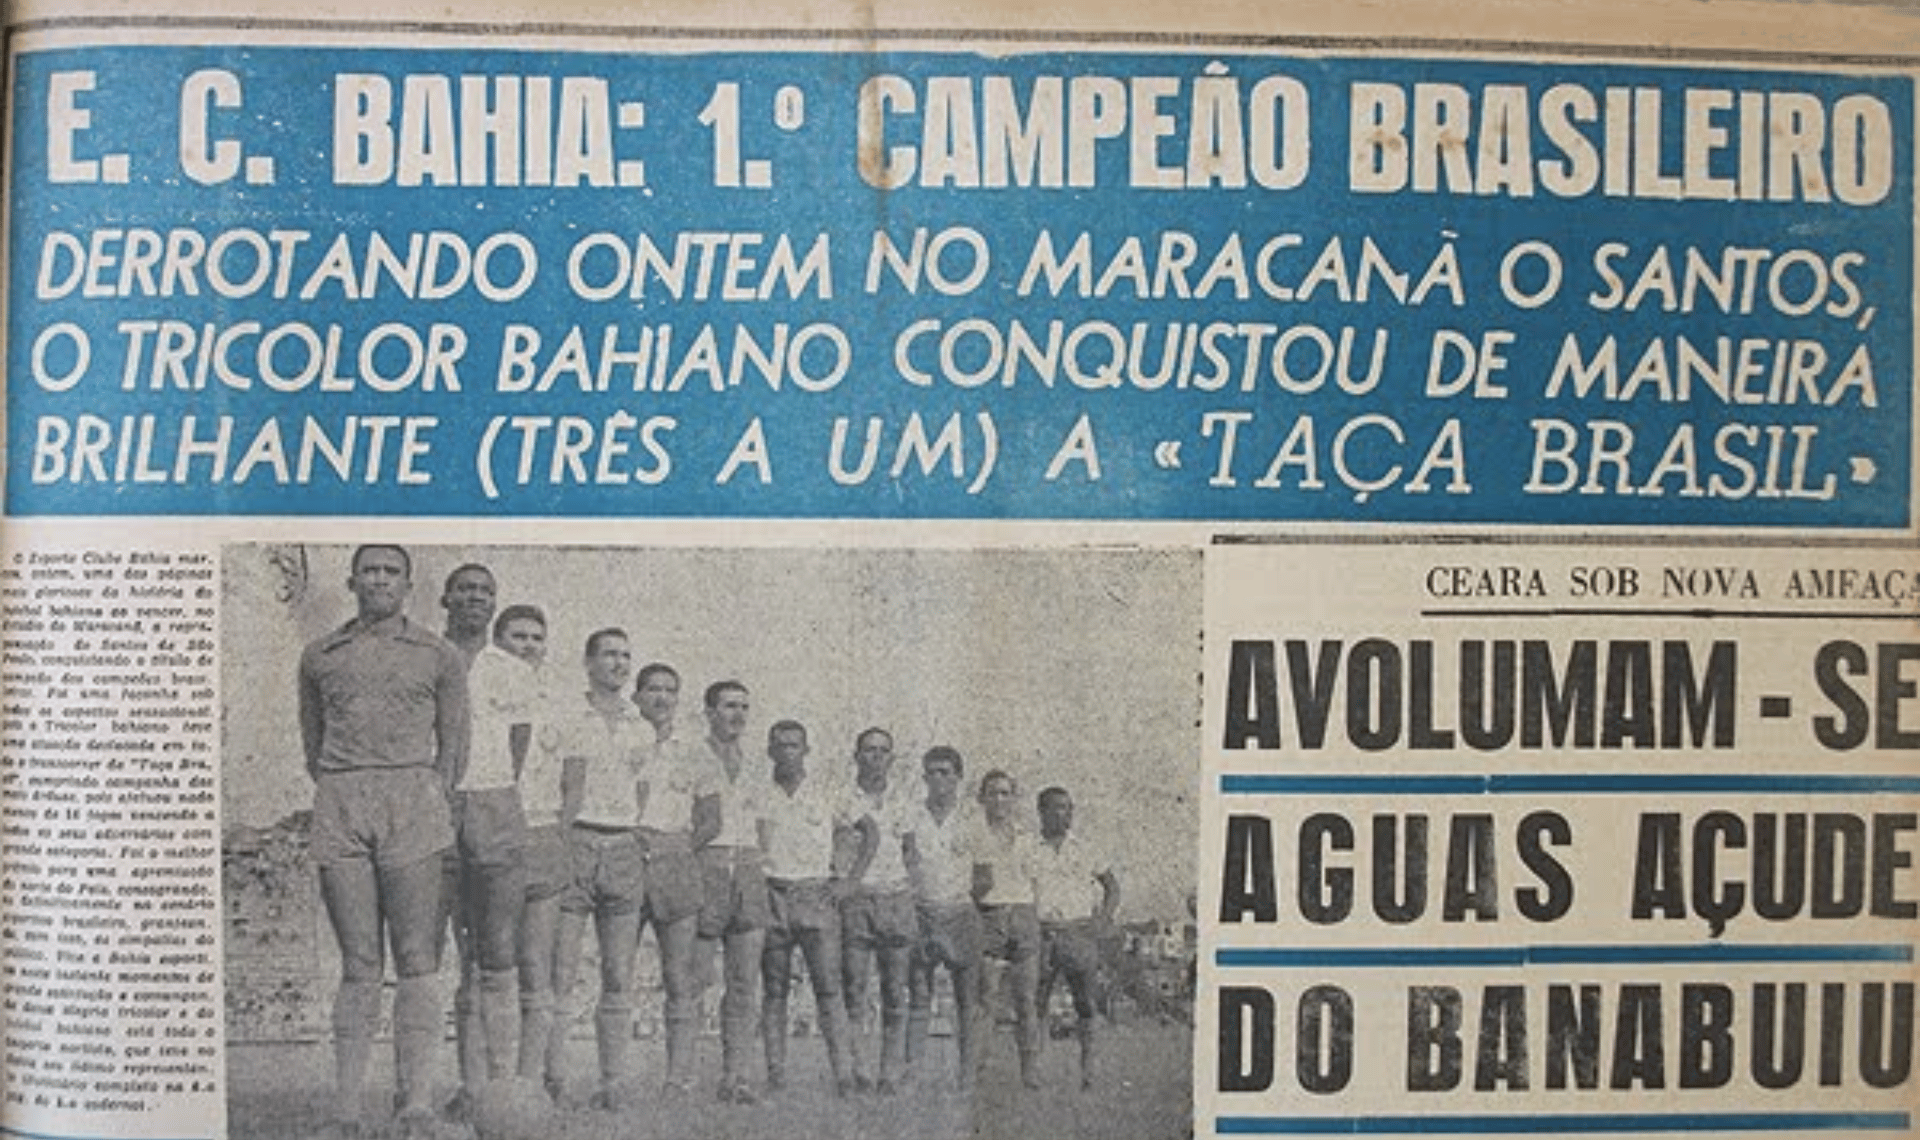 Taça Brasil